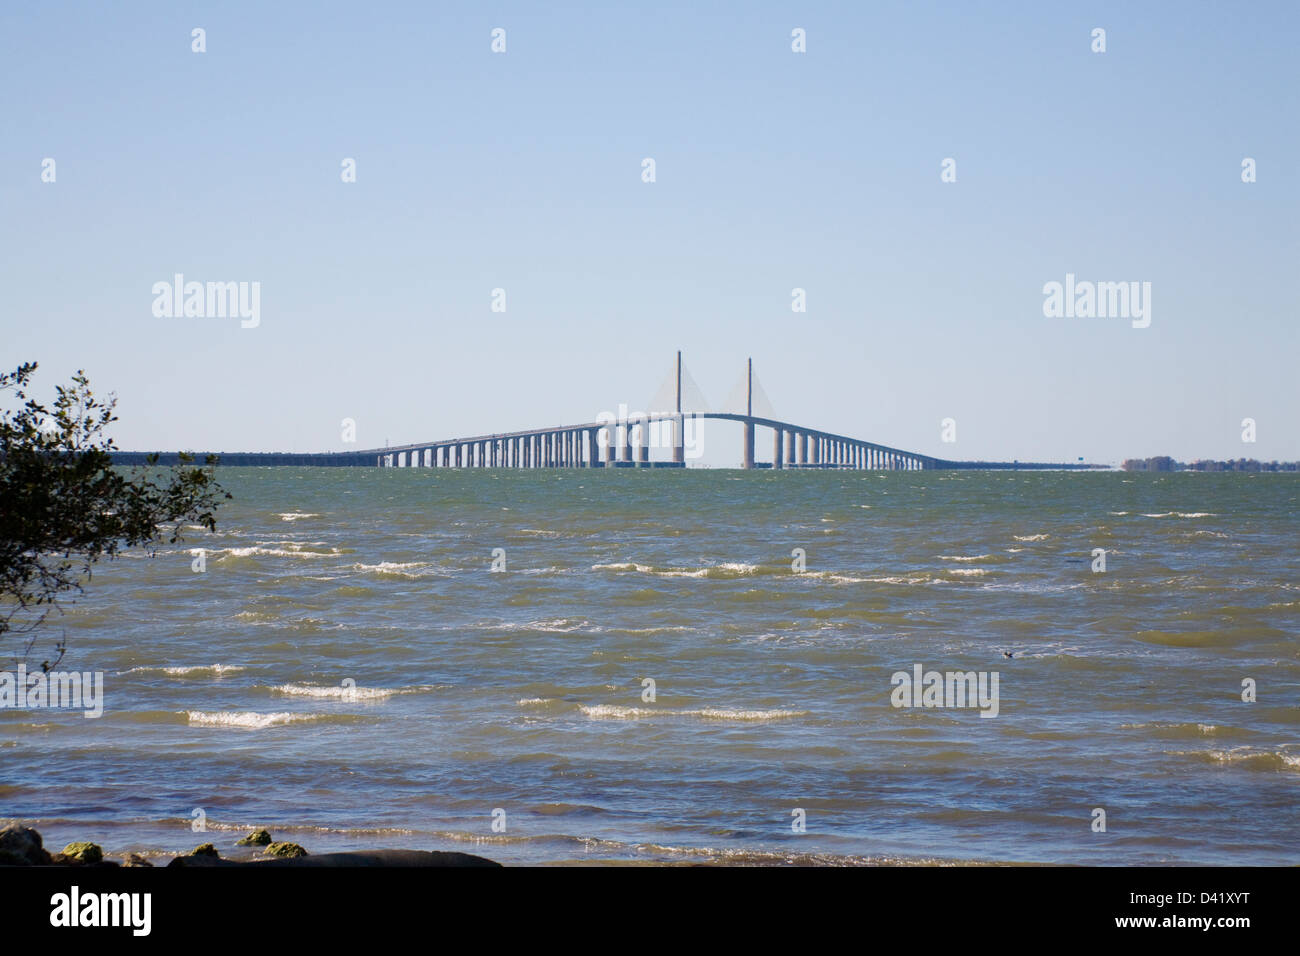 Bob Graham Sunshine Skyway puente de la Bahía de Tampa, Florida con un cable principal nos alojamos span, y una longitud total de 21,877 pies Foto de stock